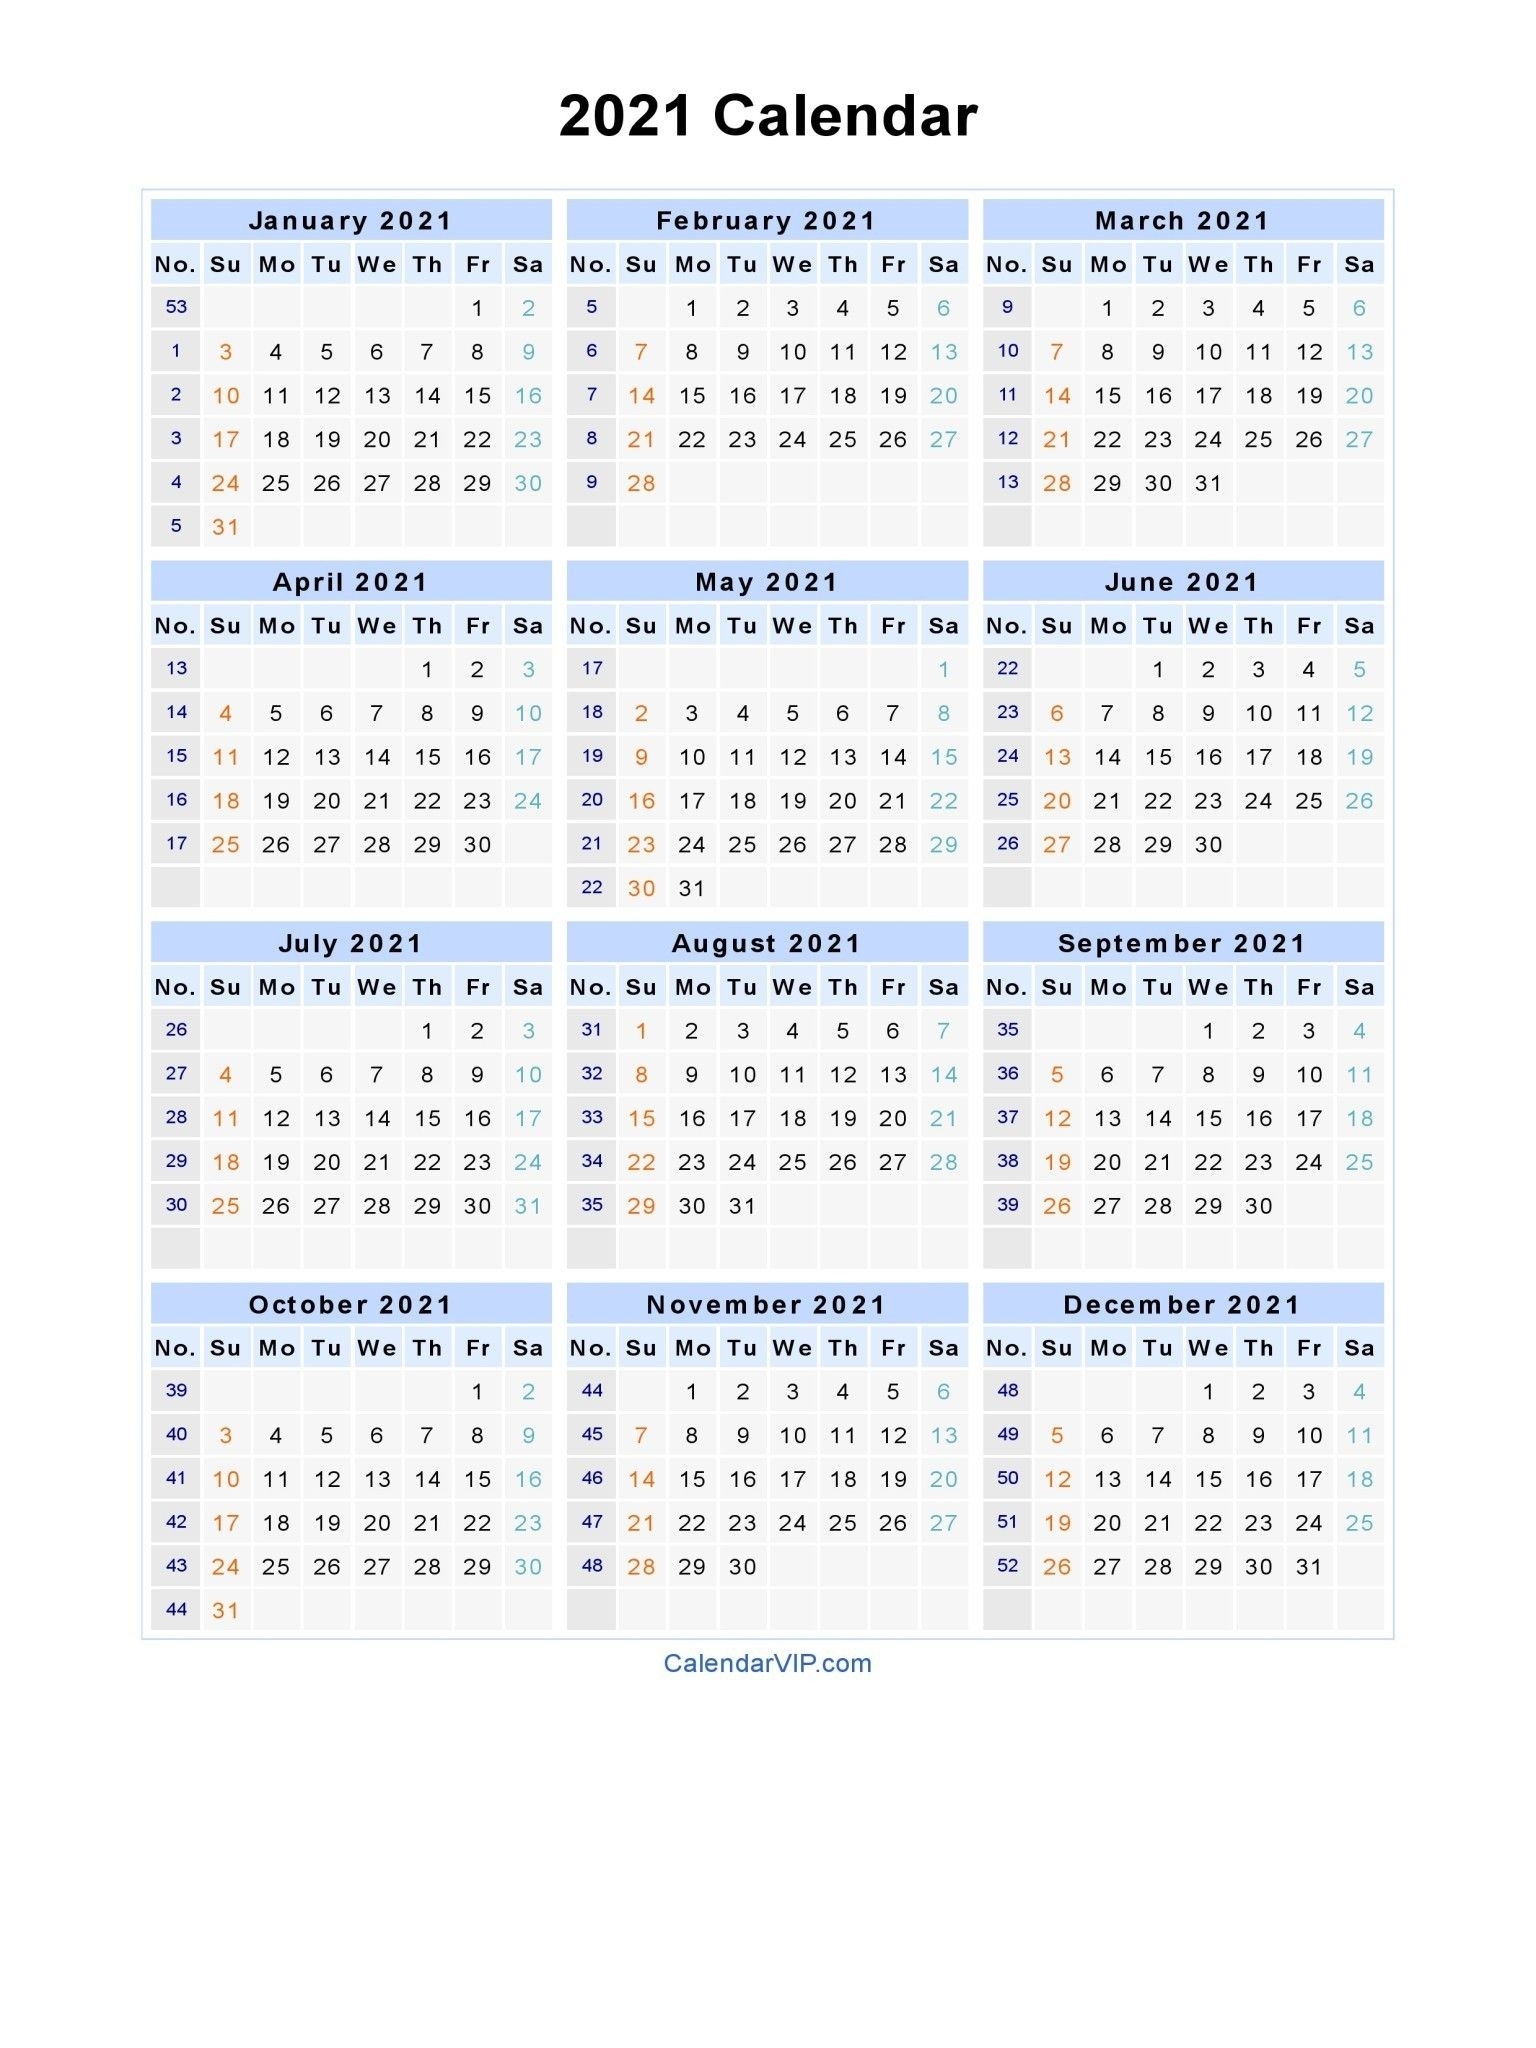 Get Excel Calendar With Week Numbers